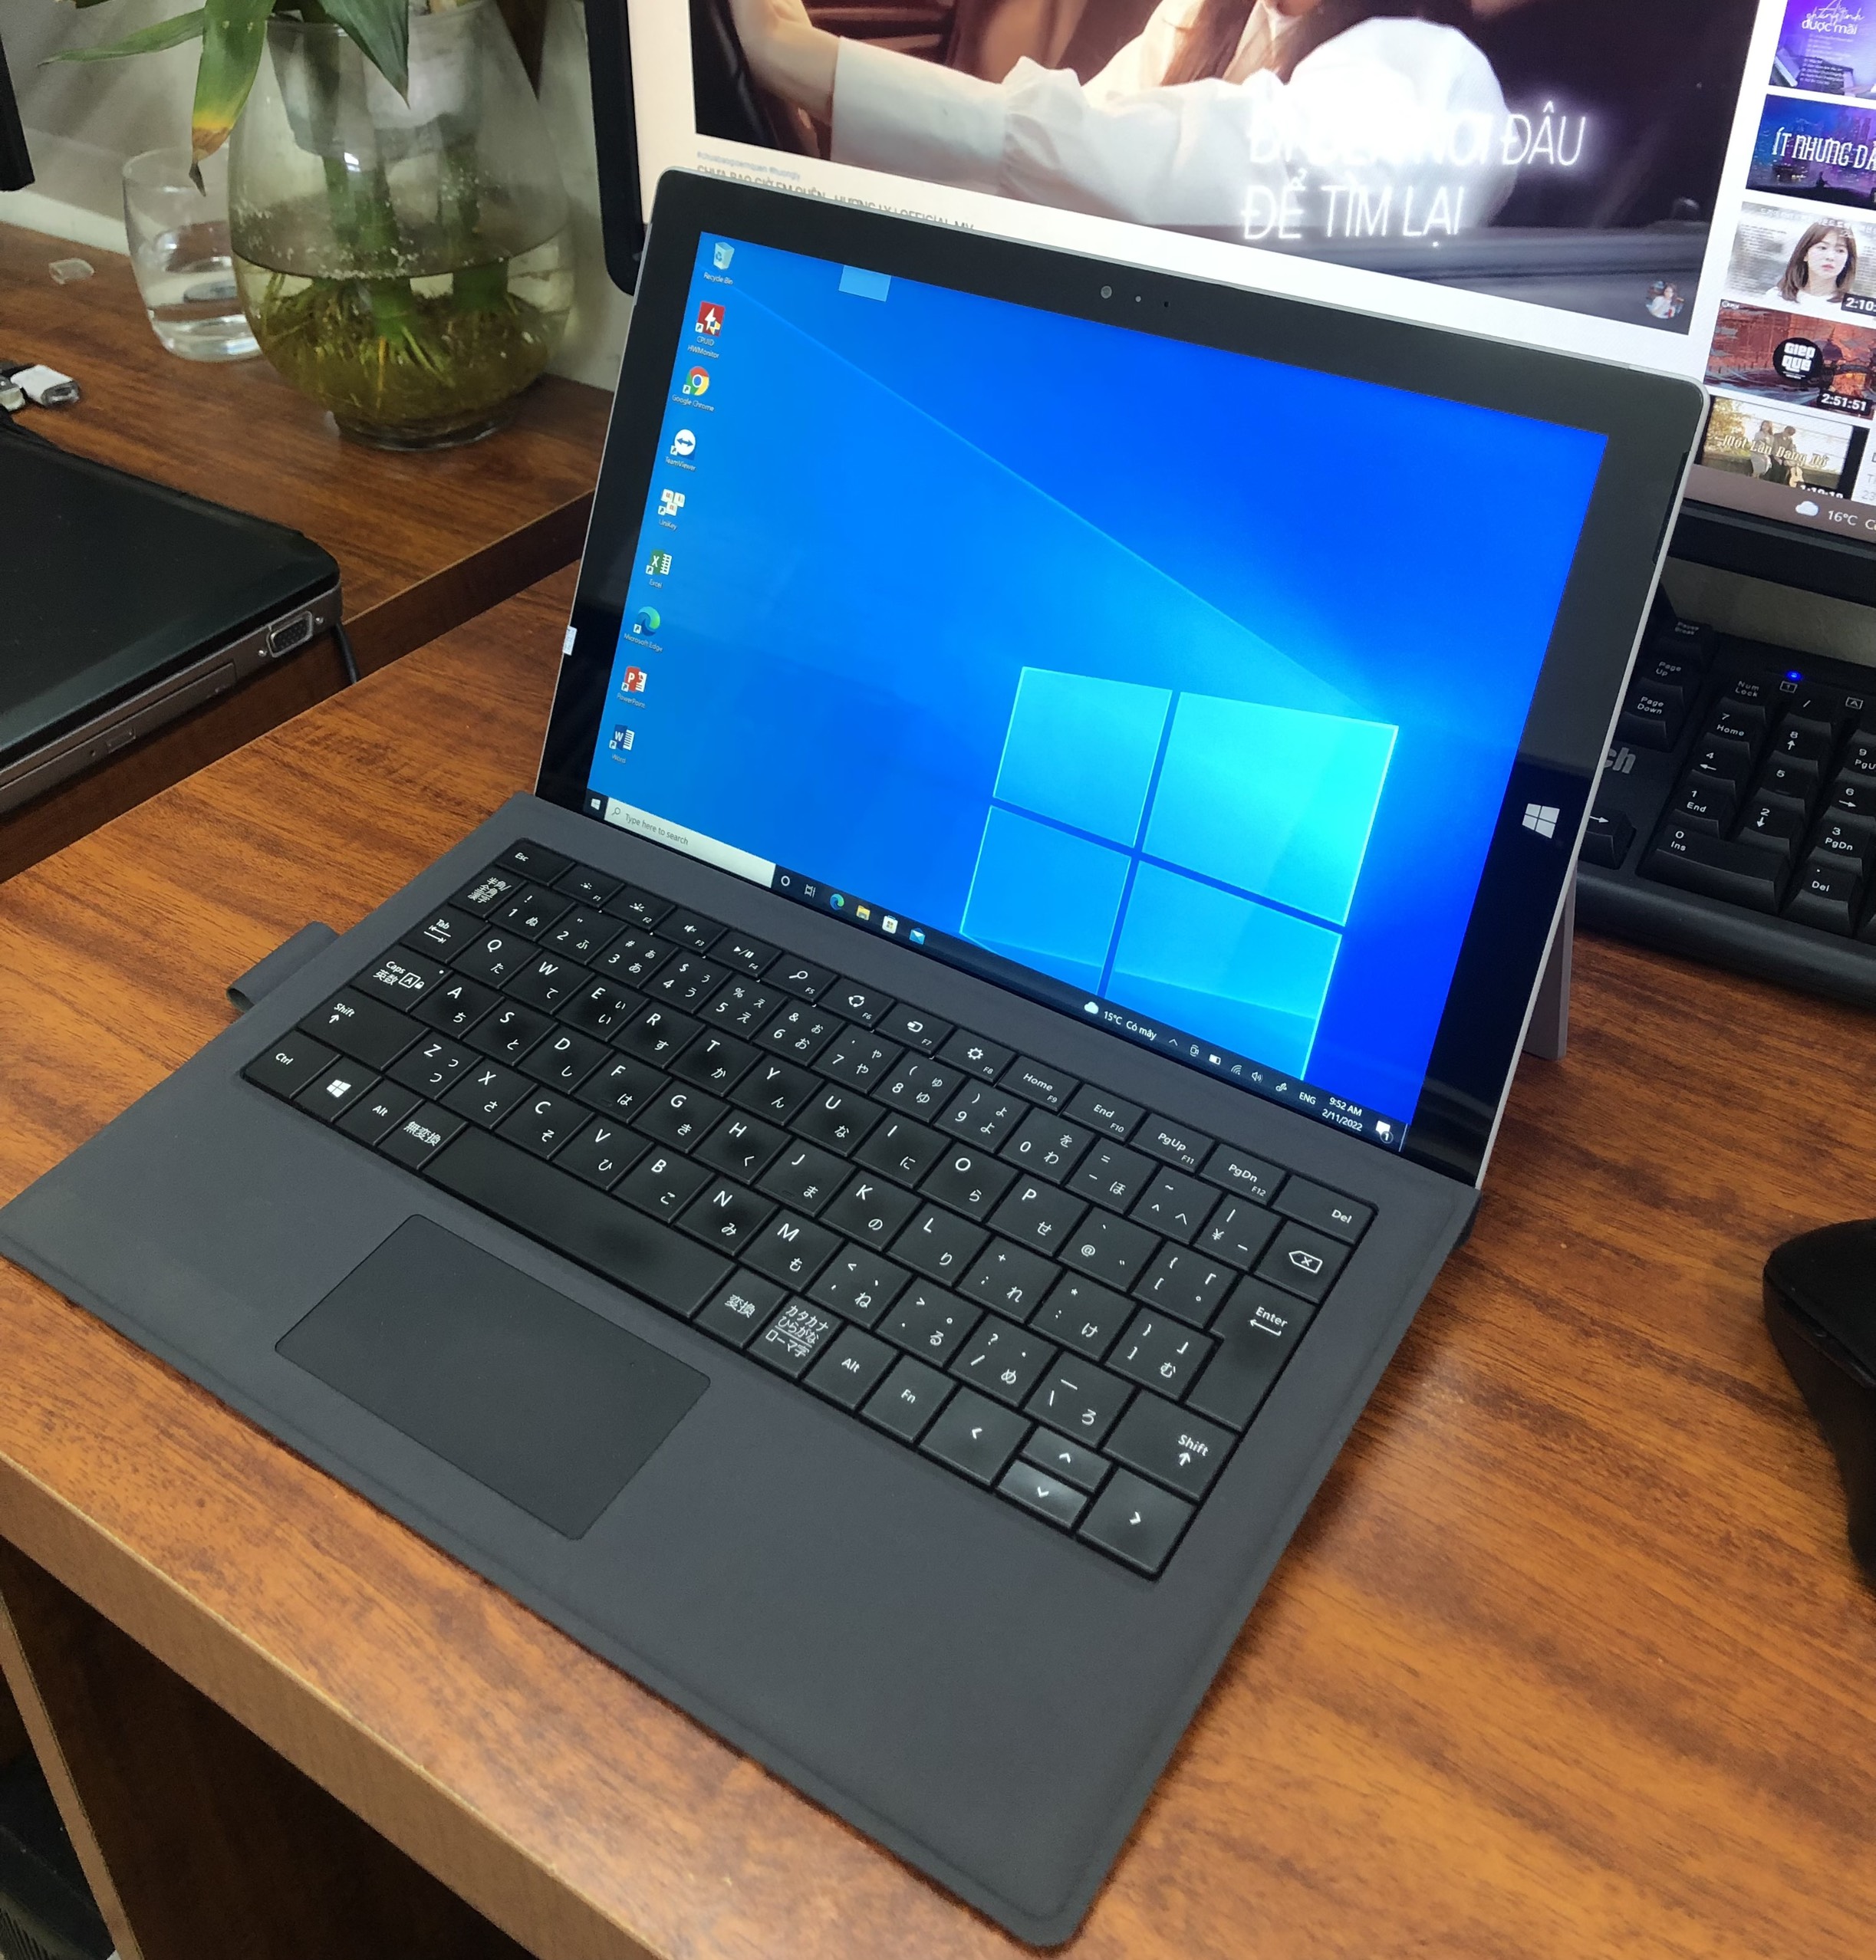 Laptop Surface Pro 3 i5 ram 8 256GB